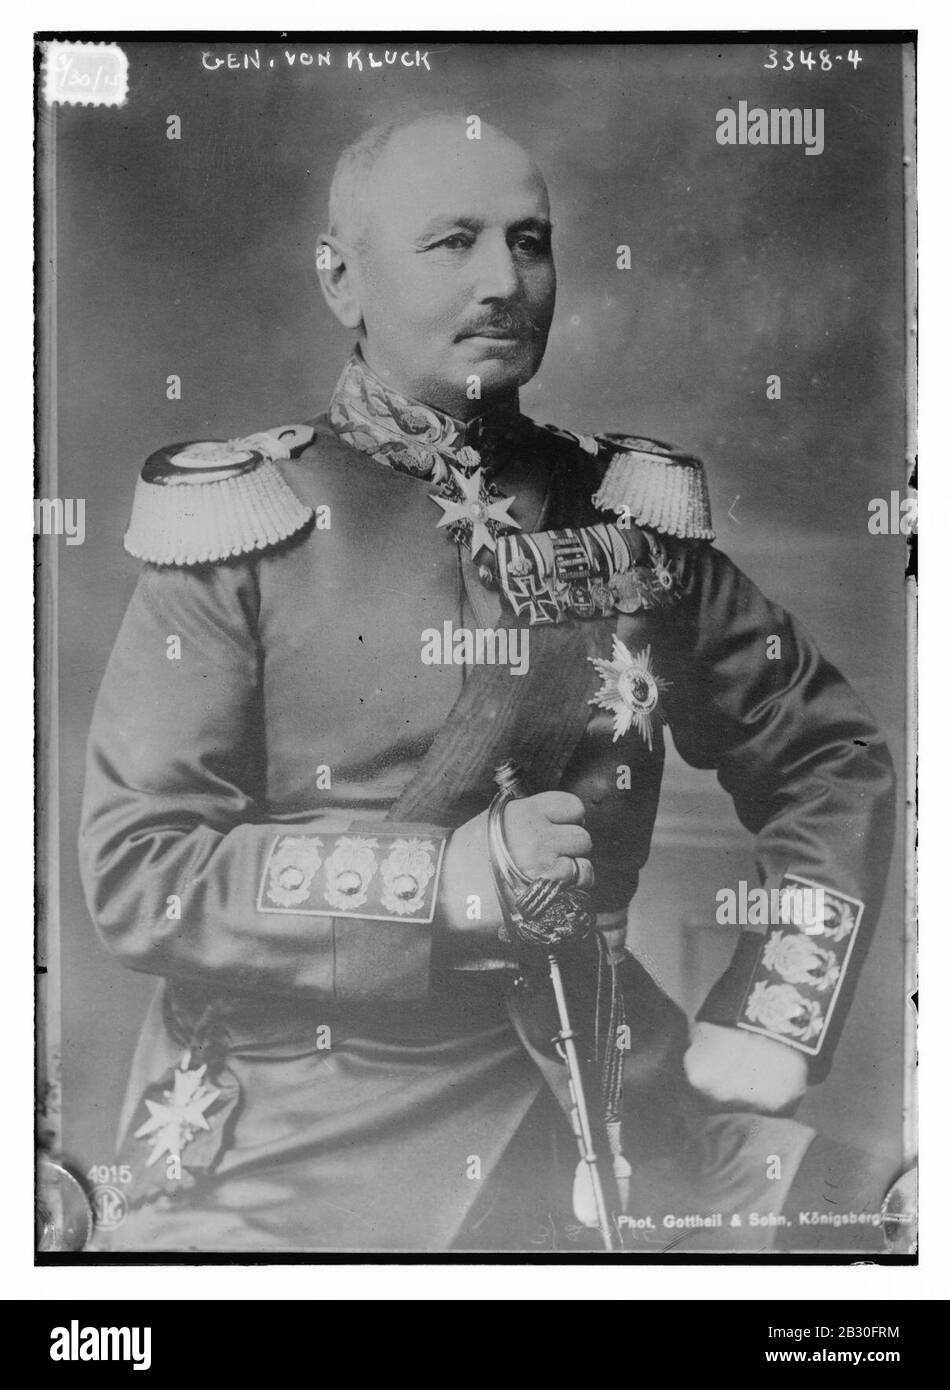 Gen. von Kluck Stock Photo